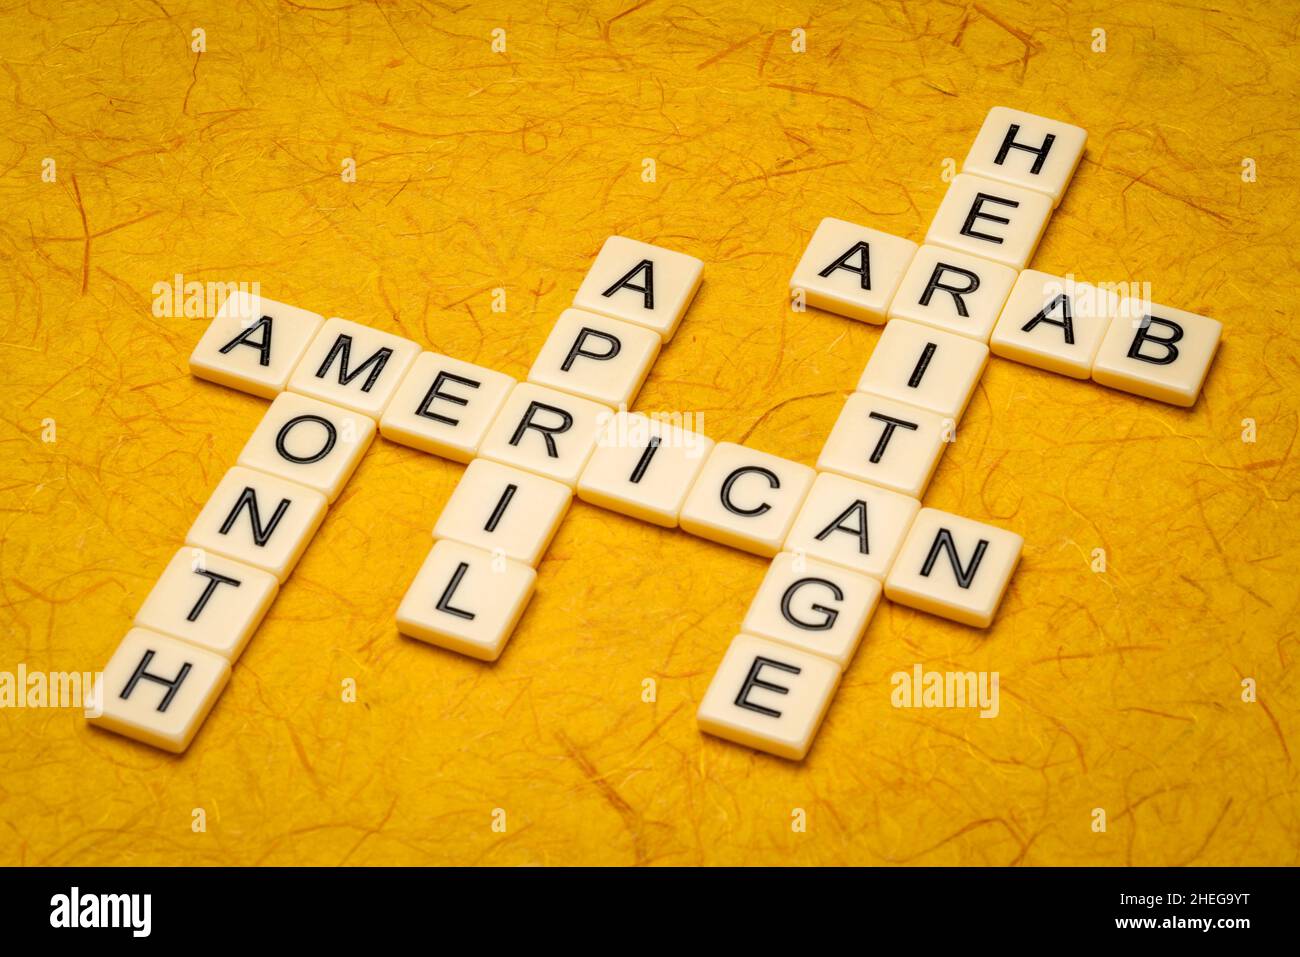 April - Arab American Heritage Month, Kreuzworträtsel in Elfenbein-Buchstabenkacheln gegen strukturiertes handgefertigtes Papier Stockfoto